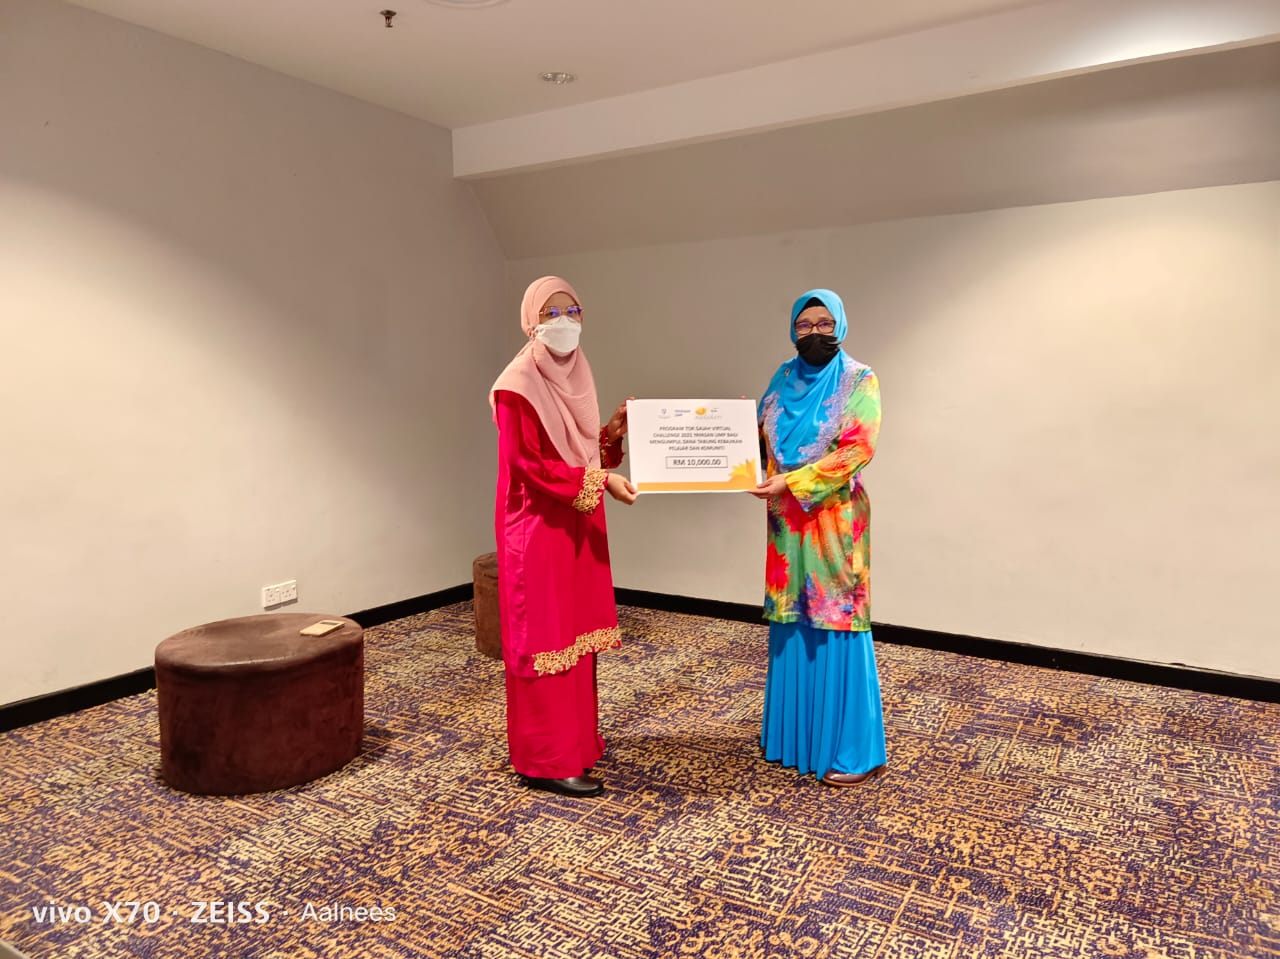 Persatuan Wanita UMP sumbang RM10,000 untuk Tabung Yayasan UMP bantu golongan susah